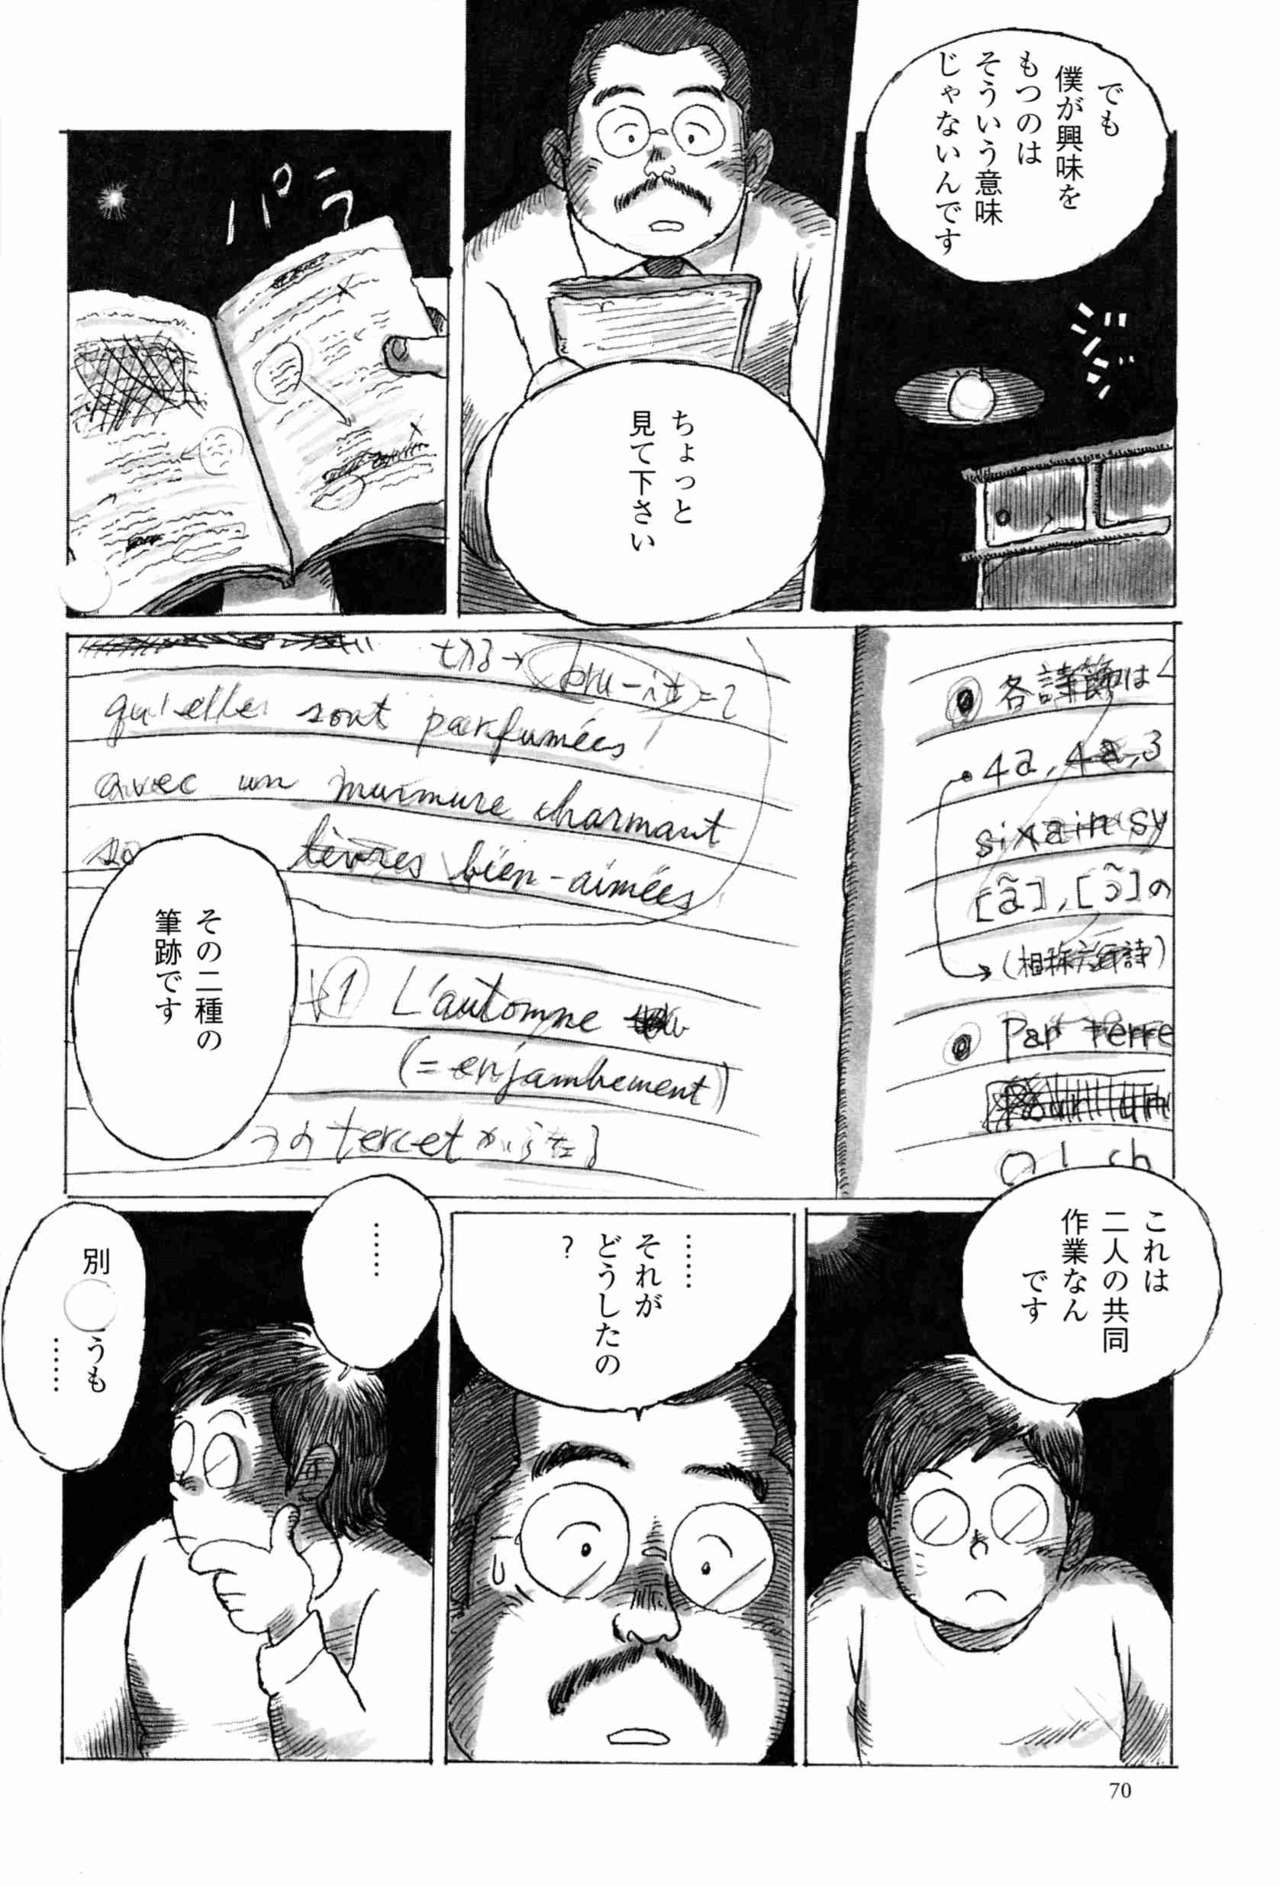 [小日向] 出郷 (SAMSON No.222 2001年01月)